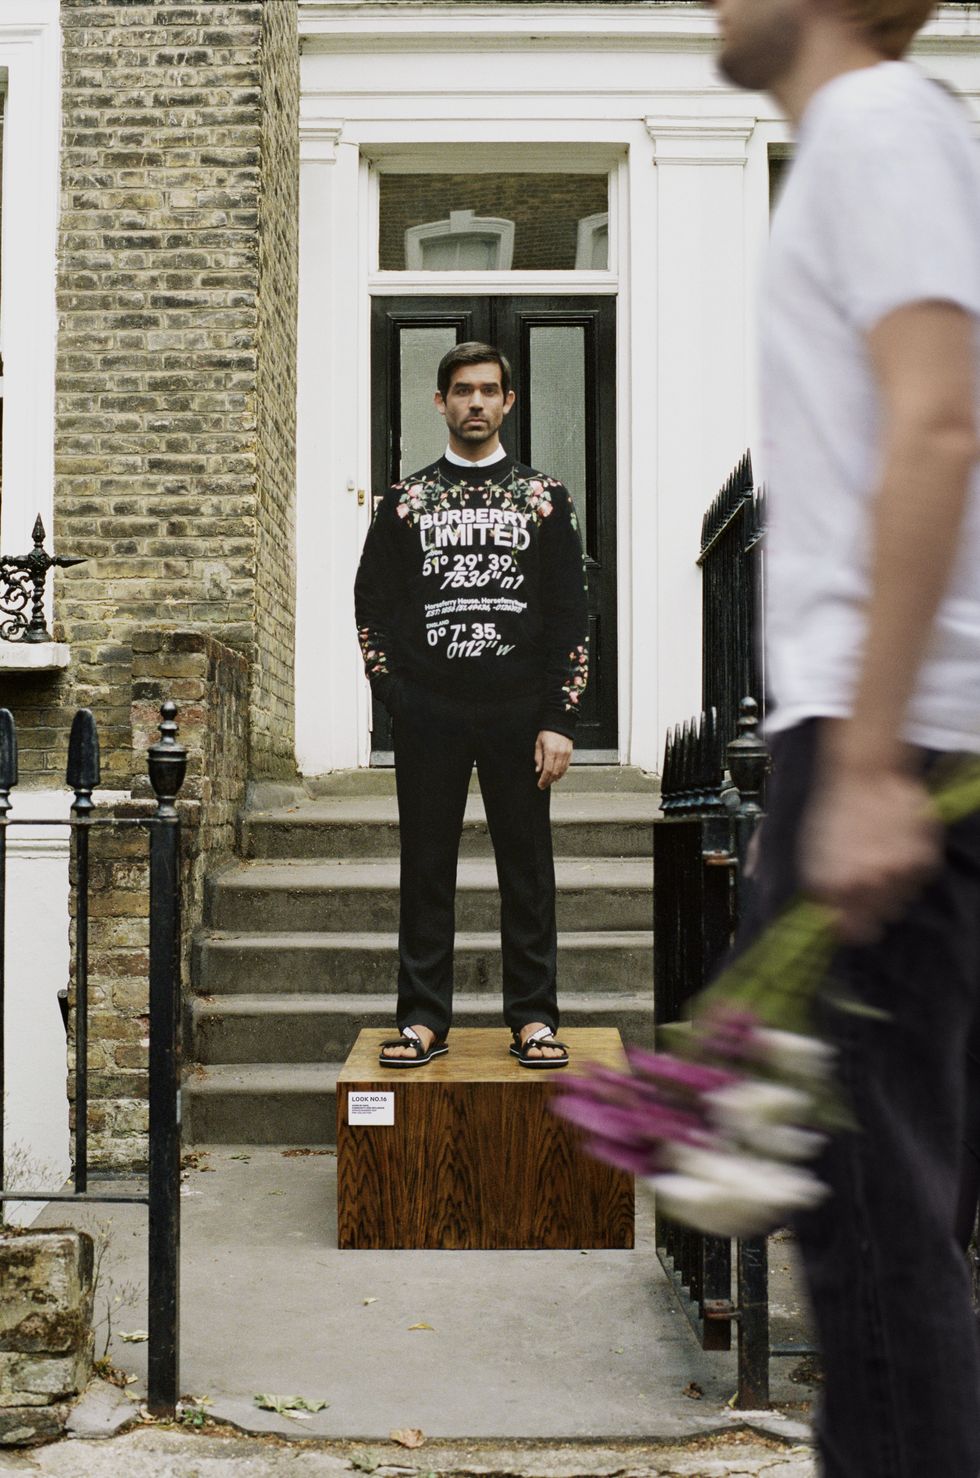 burberry員工穿著英倫玫瑰圖案黑色衛衣於家門前拍攝